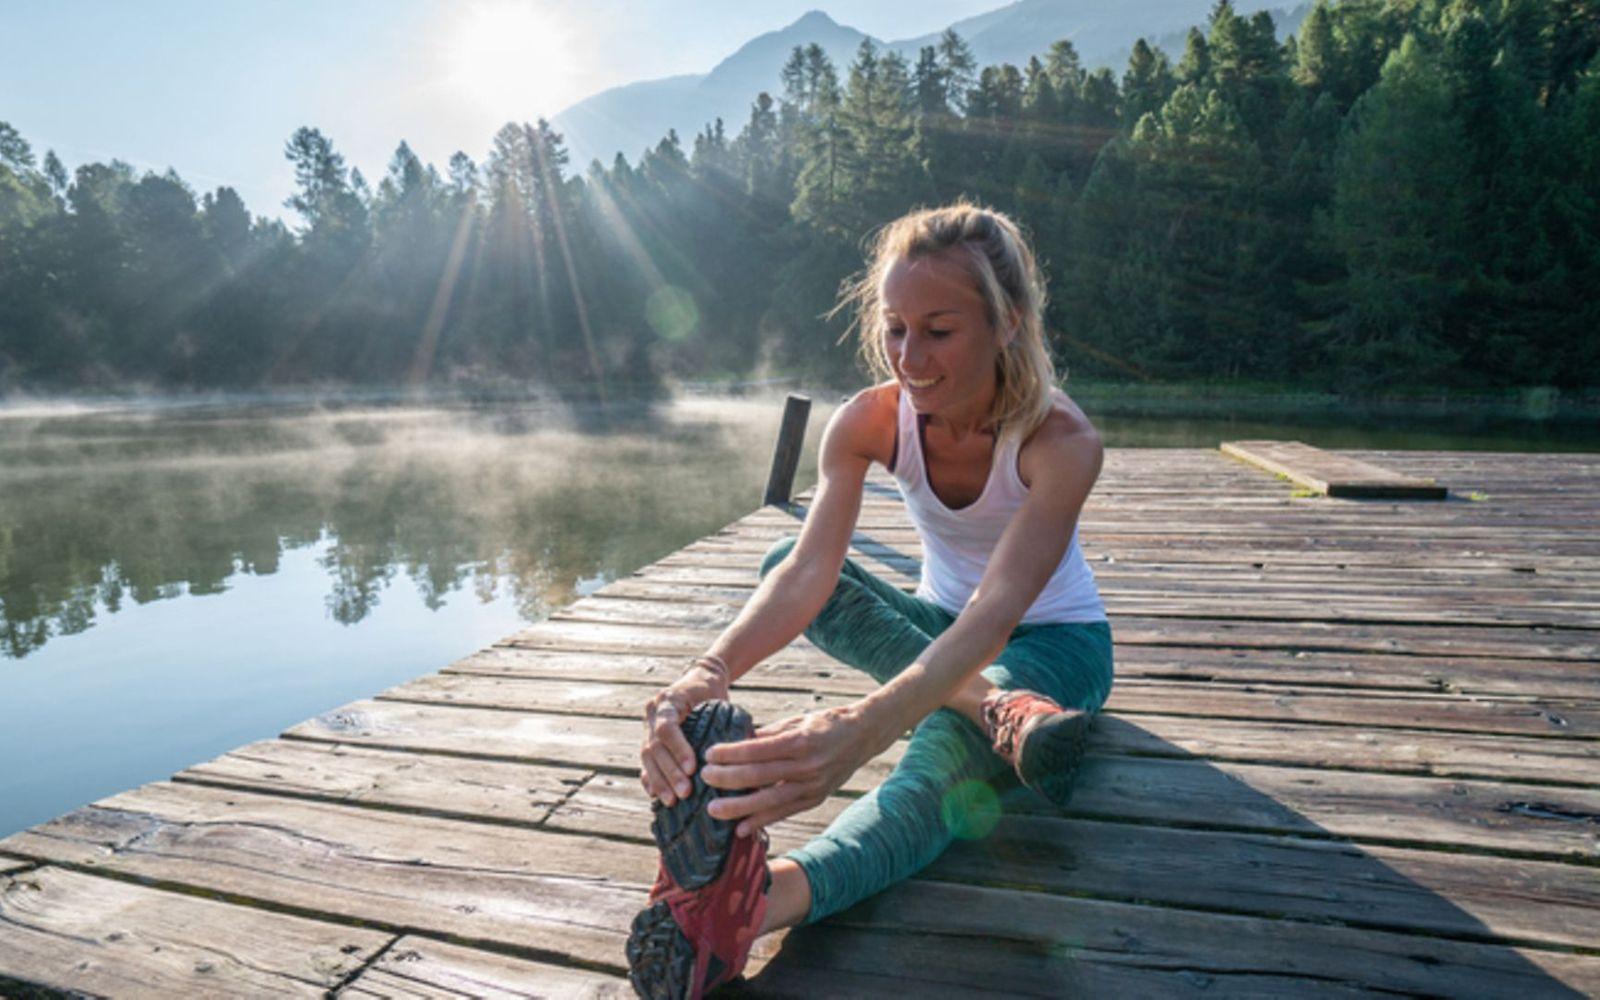 Laufen macht glücklich: Eine Frau sitzt auf einem Steg am See und stretcht sich.